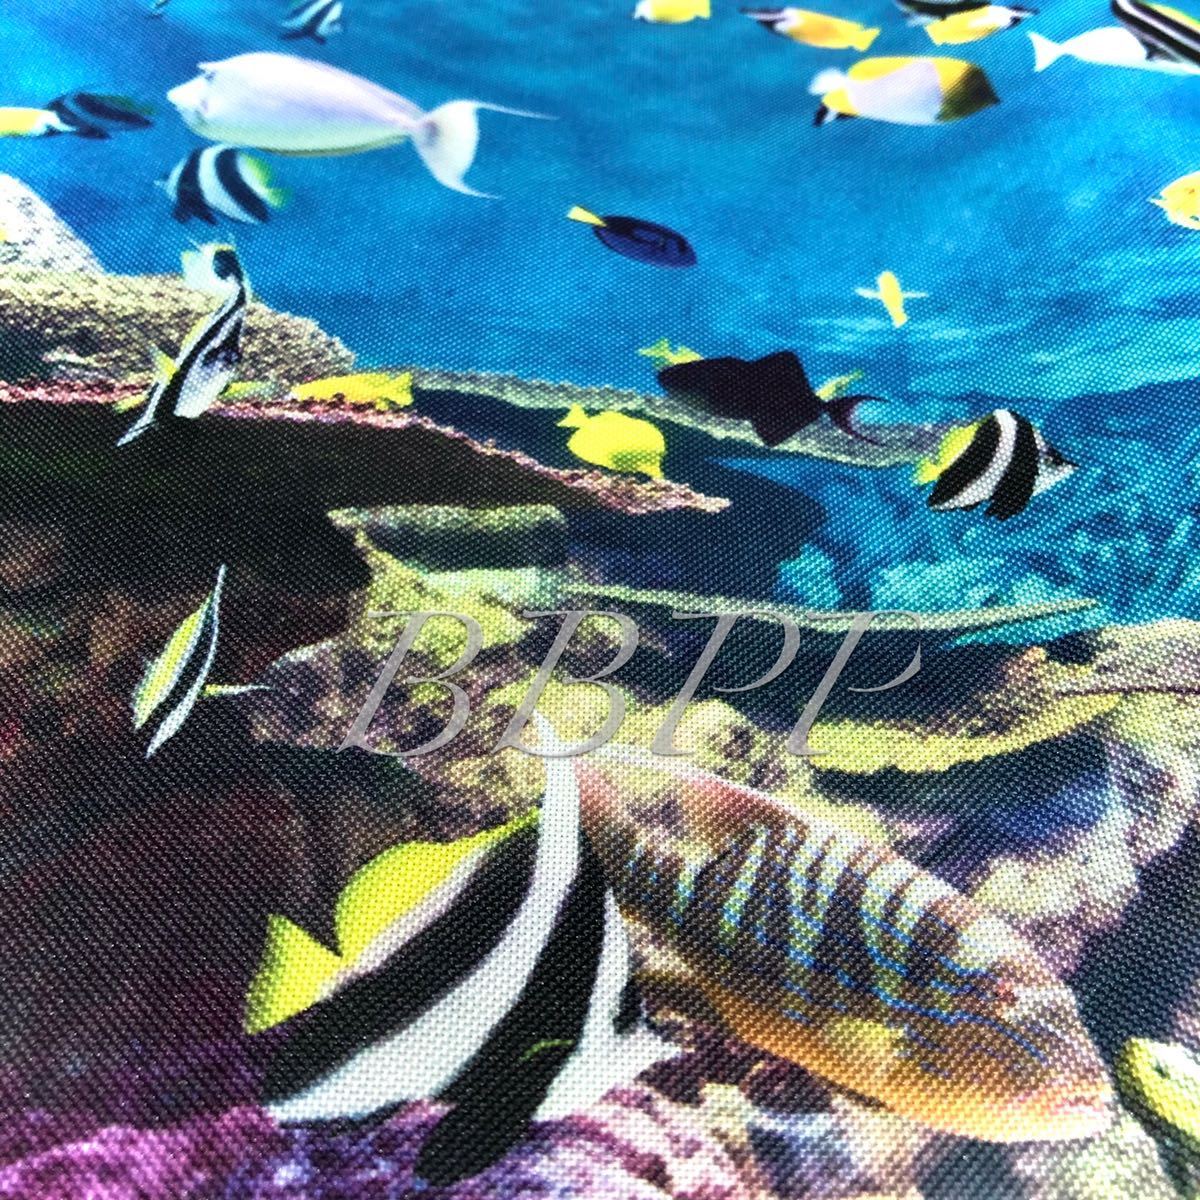 31×46 海水魚 ポスター/珊瑚 コーラル 水中 波 海 サーフ マリン ハワイ ハワイアン サーフィン ダイバー ダイビング サンゴ礁 熱帯魚 魚_画像2